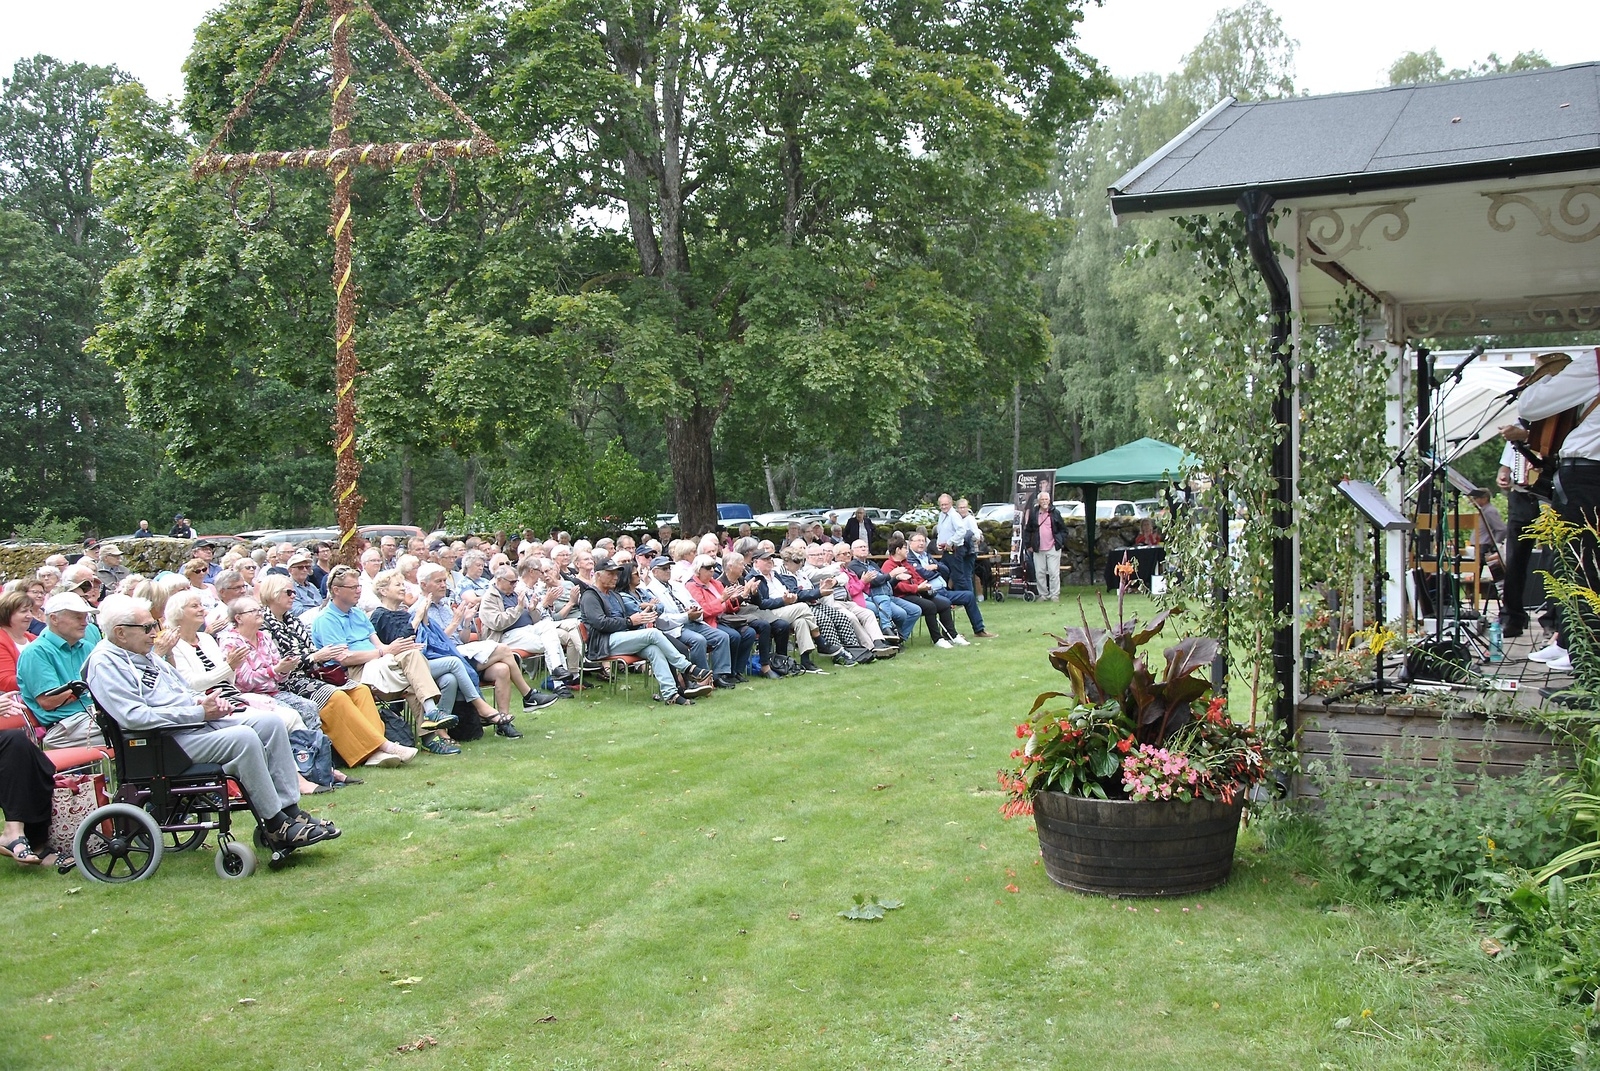 Arrangörerna uppskattade publiken till cirka 200 personer. Foto: Magnus Wahlström